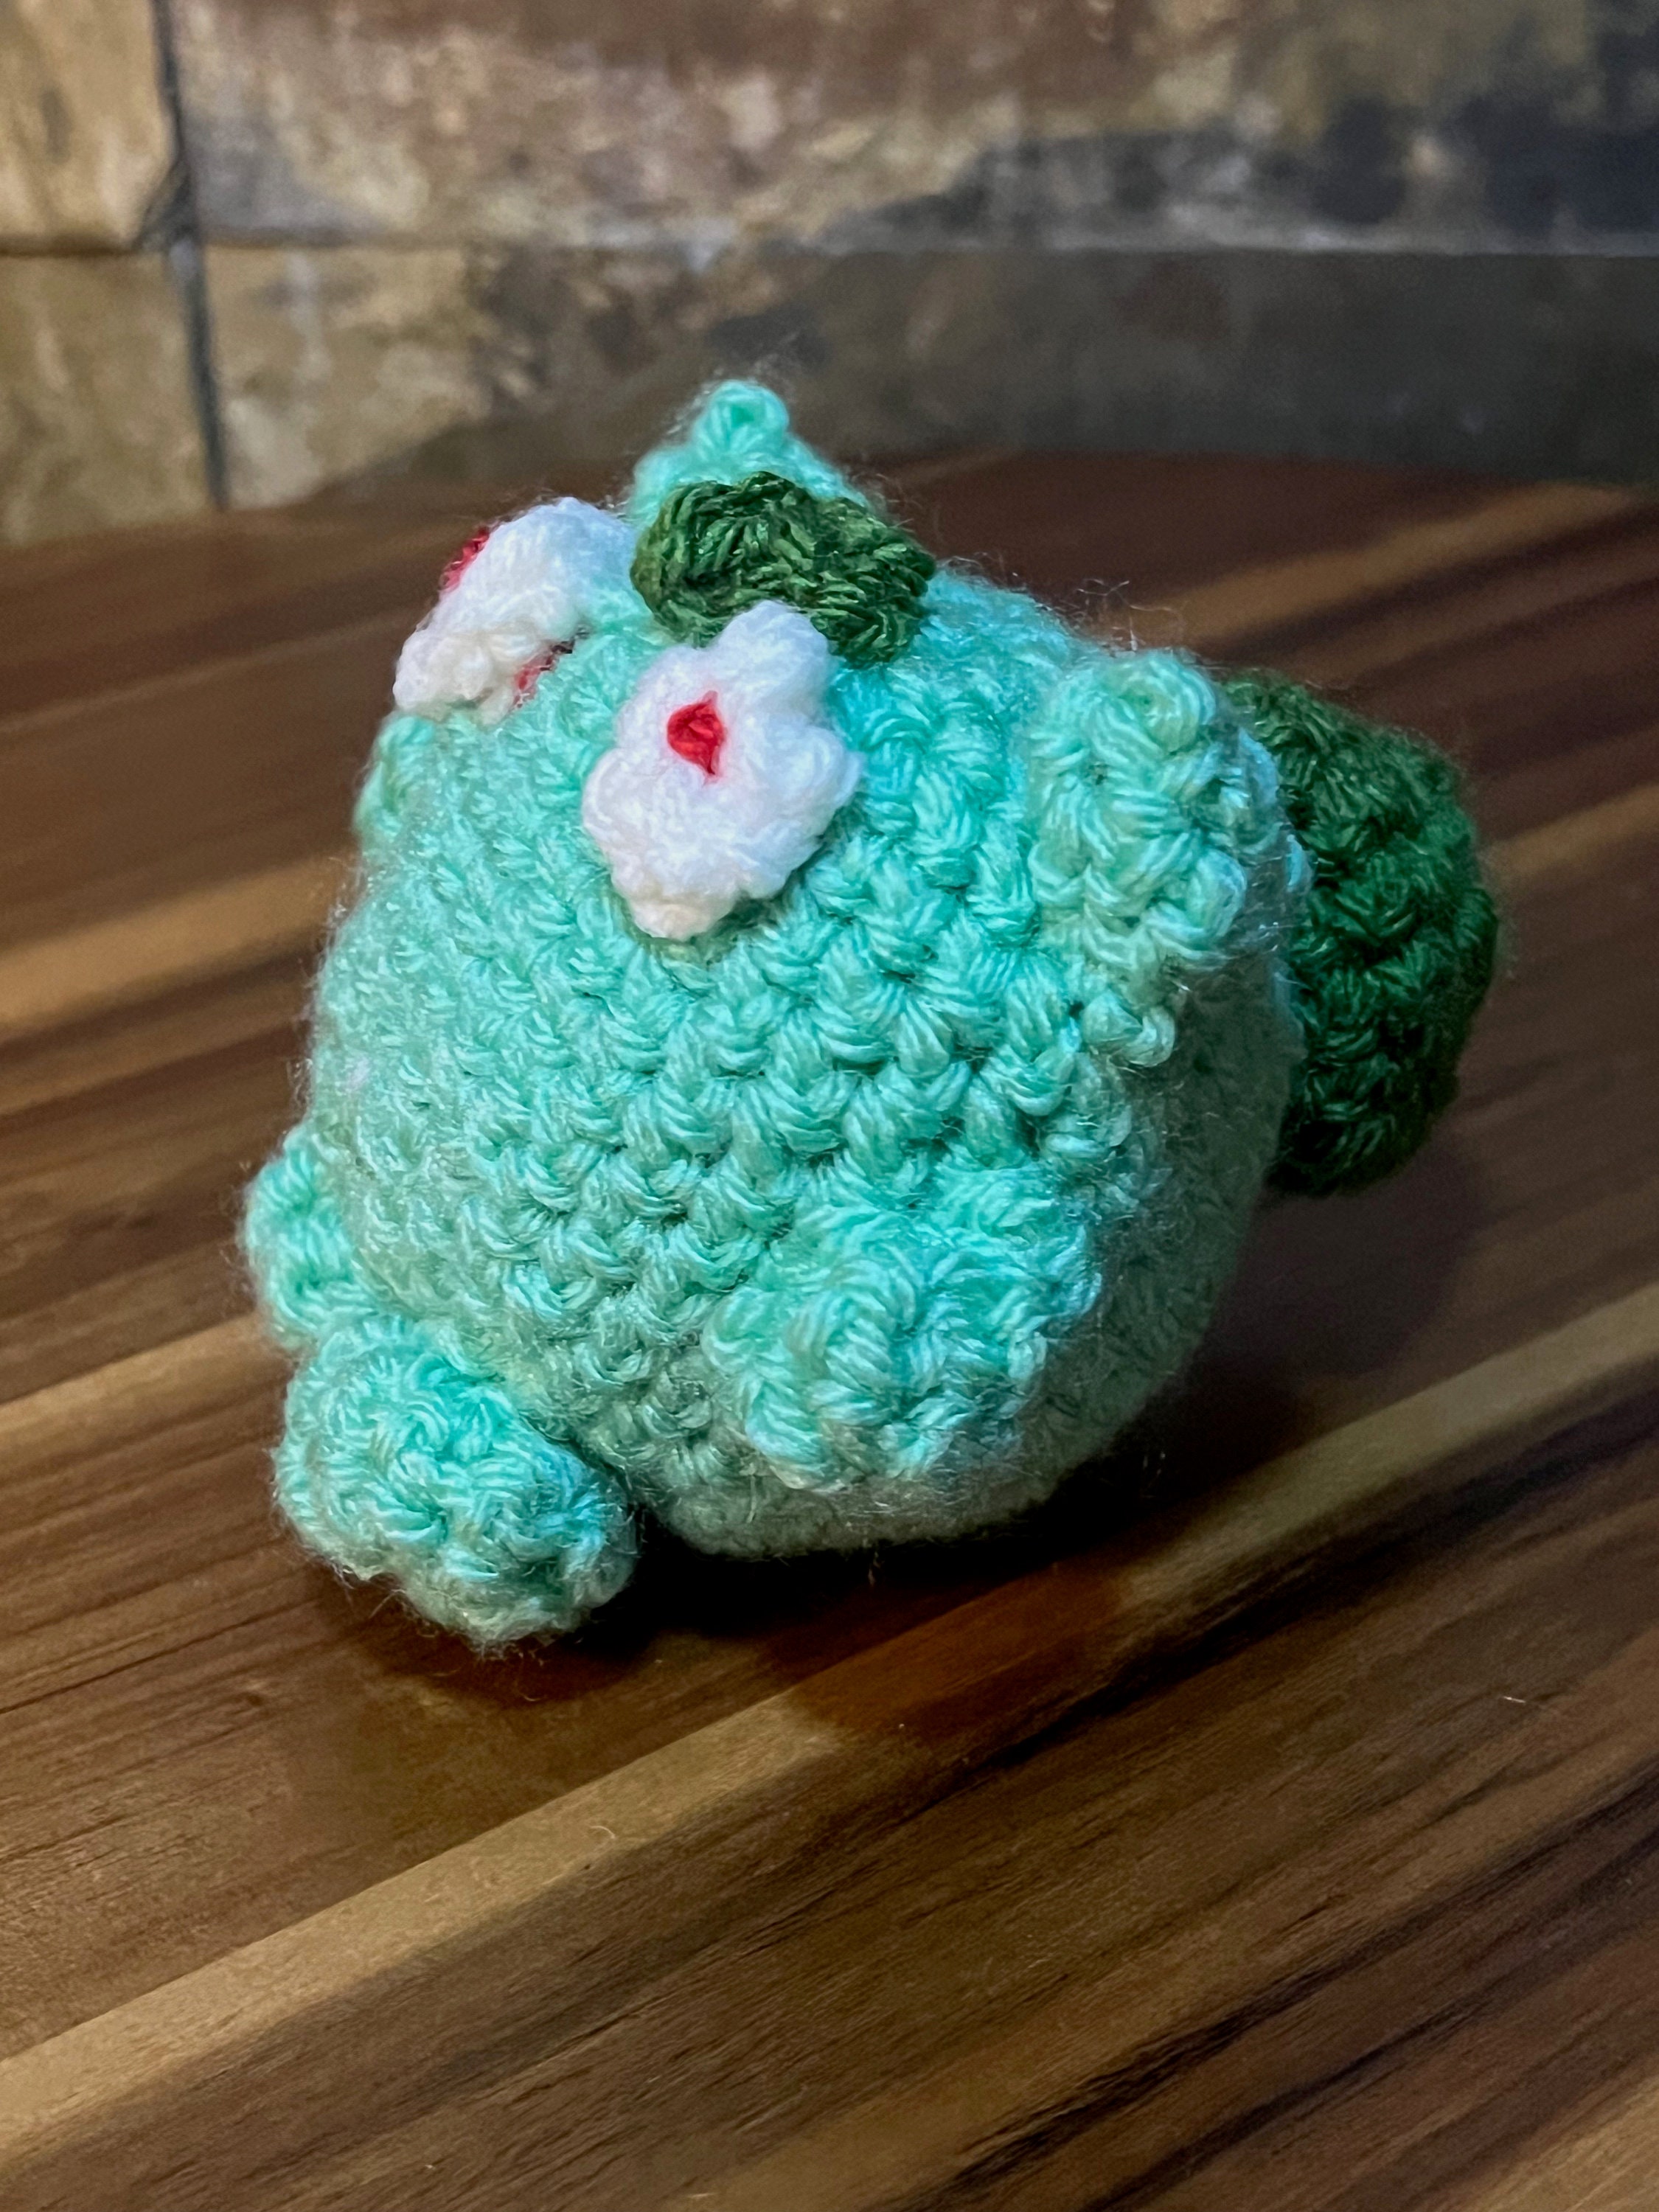 Crochet Pattern Monsters, Easy to Follow Amigurumi, Mini Amigurumi,  Amigurumi Pattern Videos, Cute Monsters Crochet, Downloadable PDF 